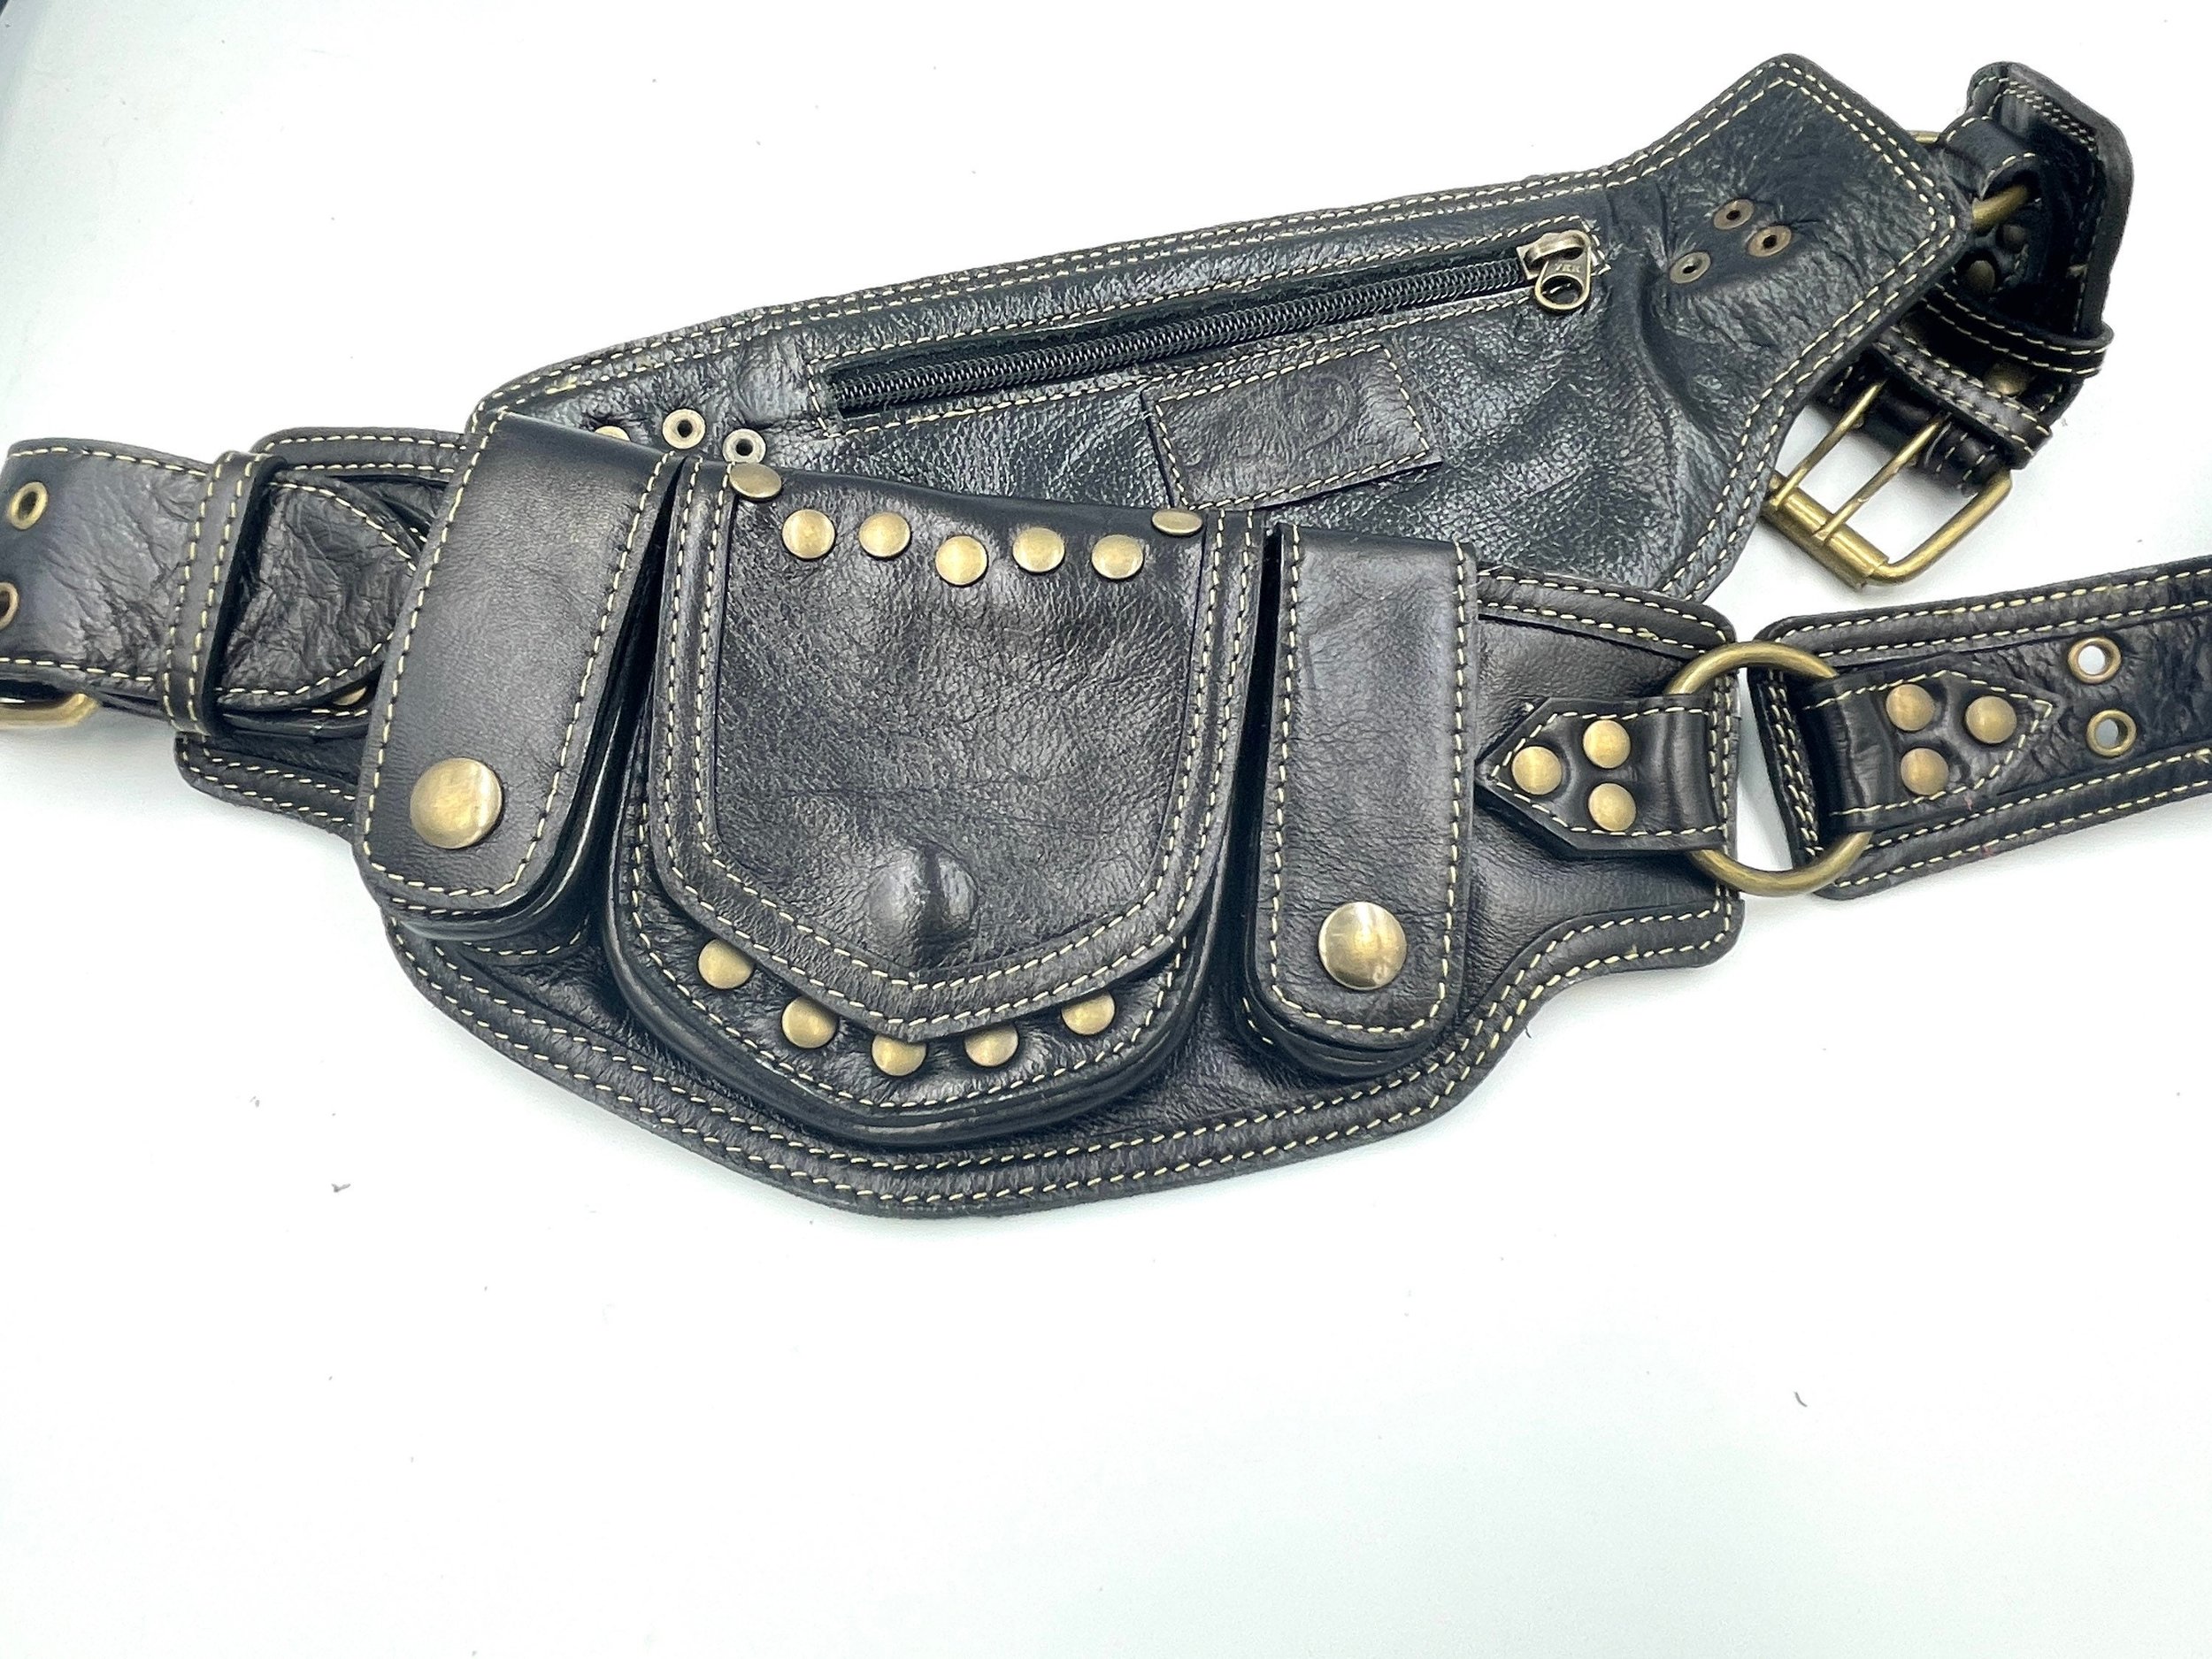 Utility Belt Bag with Pockets